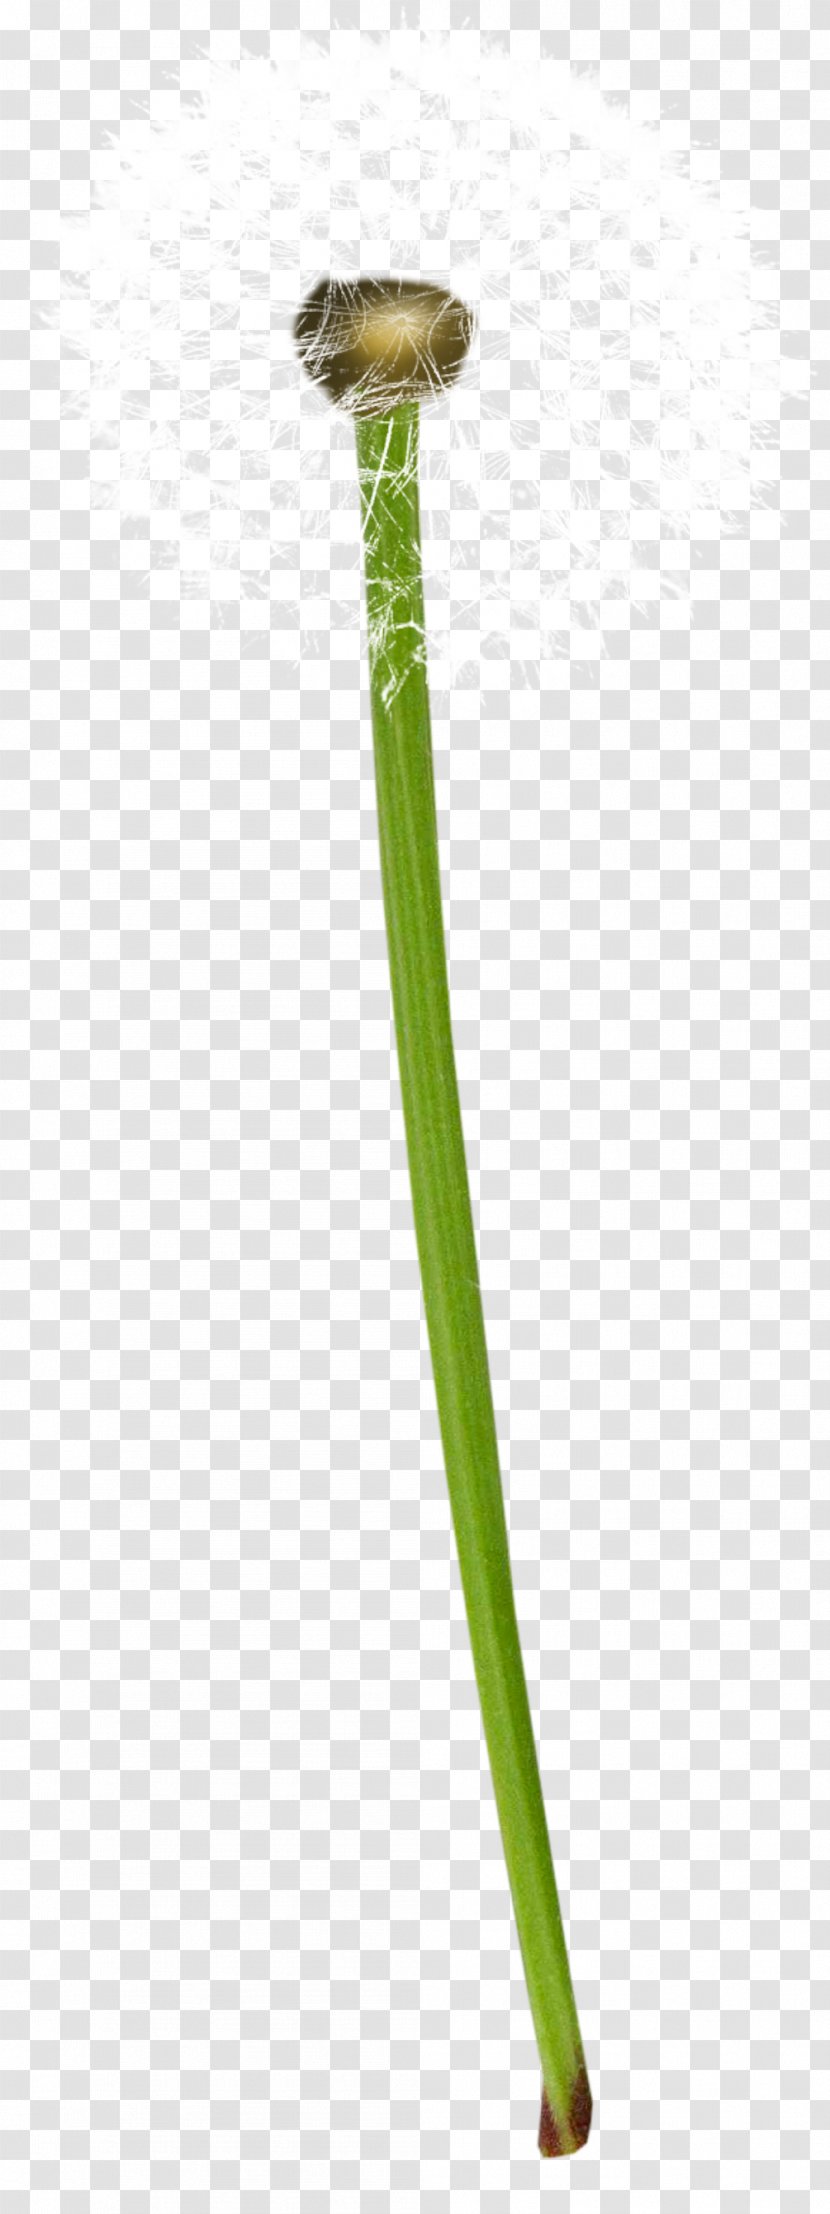 Common Dandelion Plant Euclidean Vector - Gratis - Plants Transparent PNG